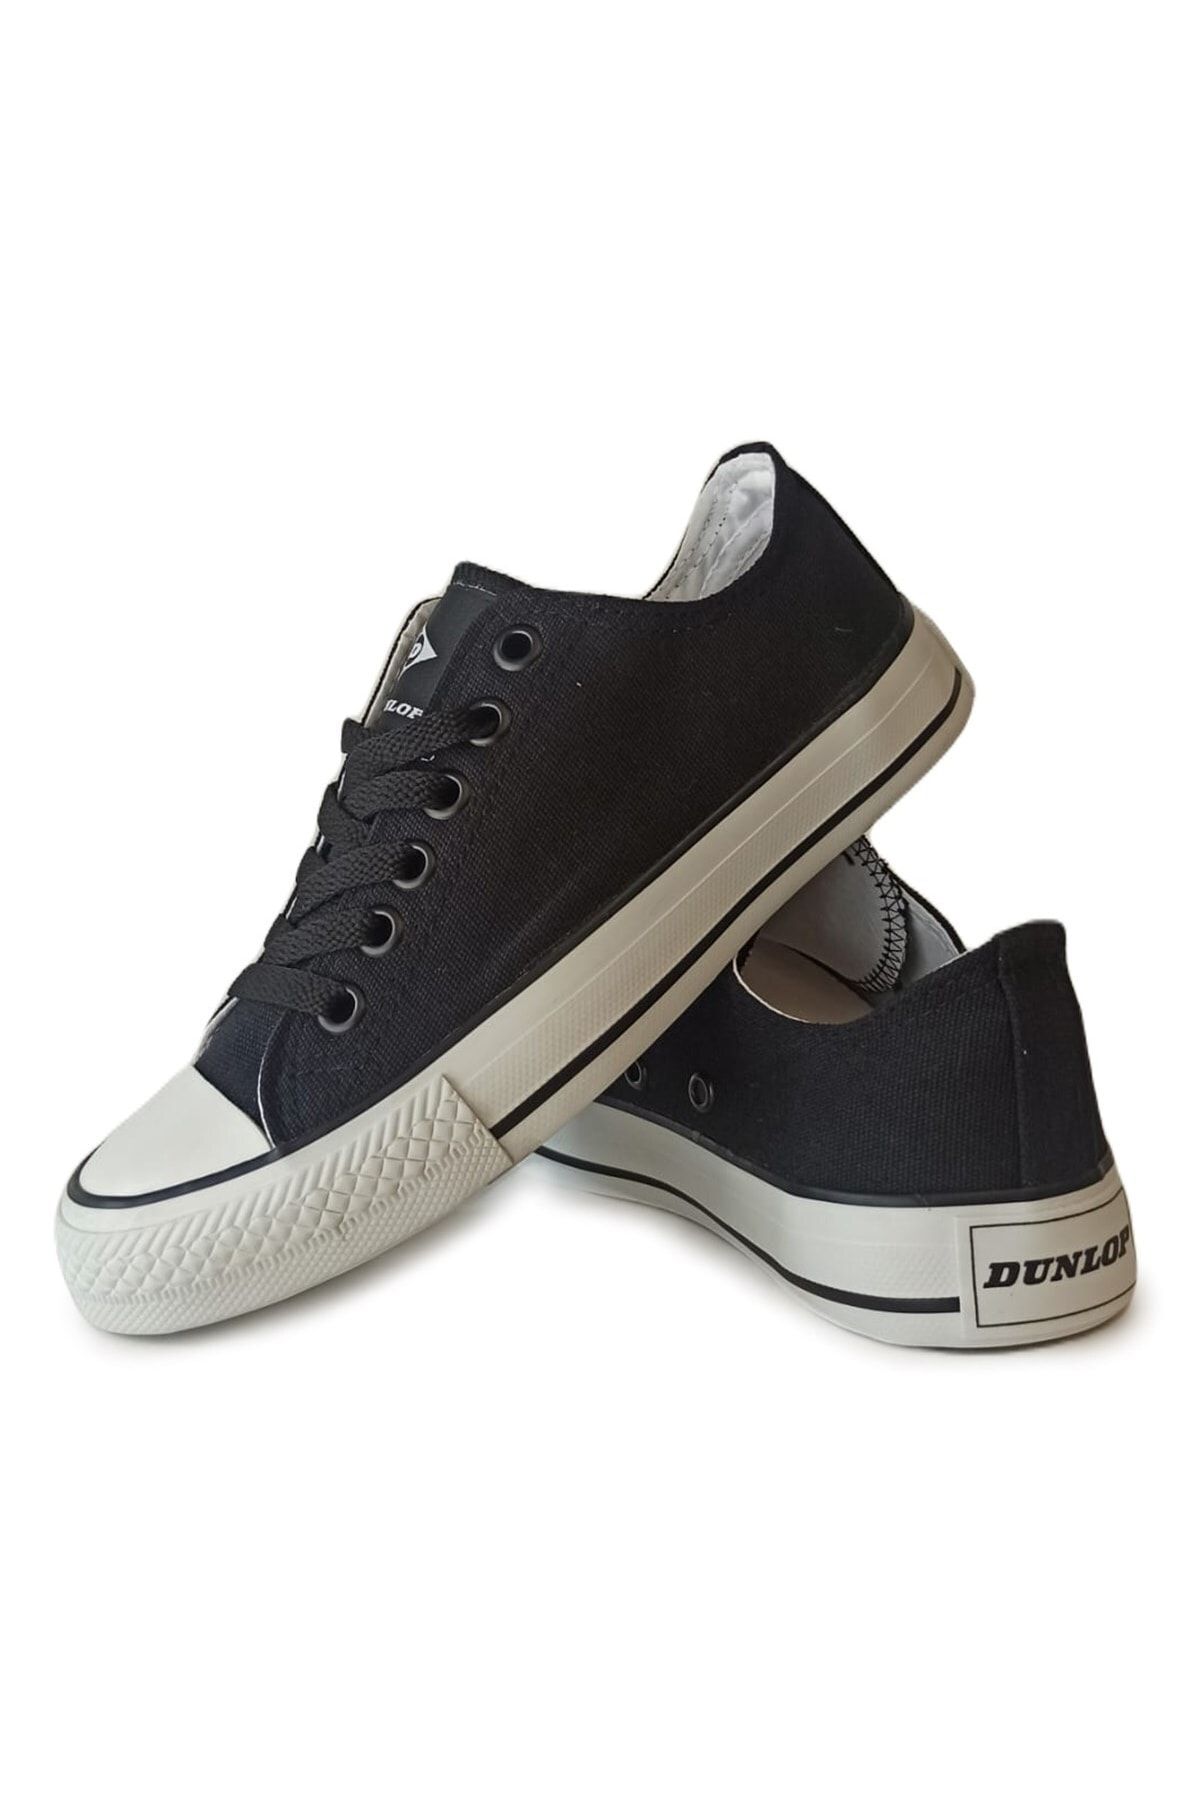 Dunlop Kadın Sneaker Günlük Keten Spor Ayakkabı Siyah Beyaz 1424 V1